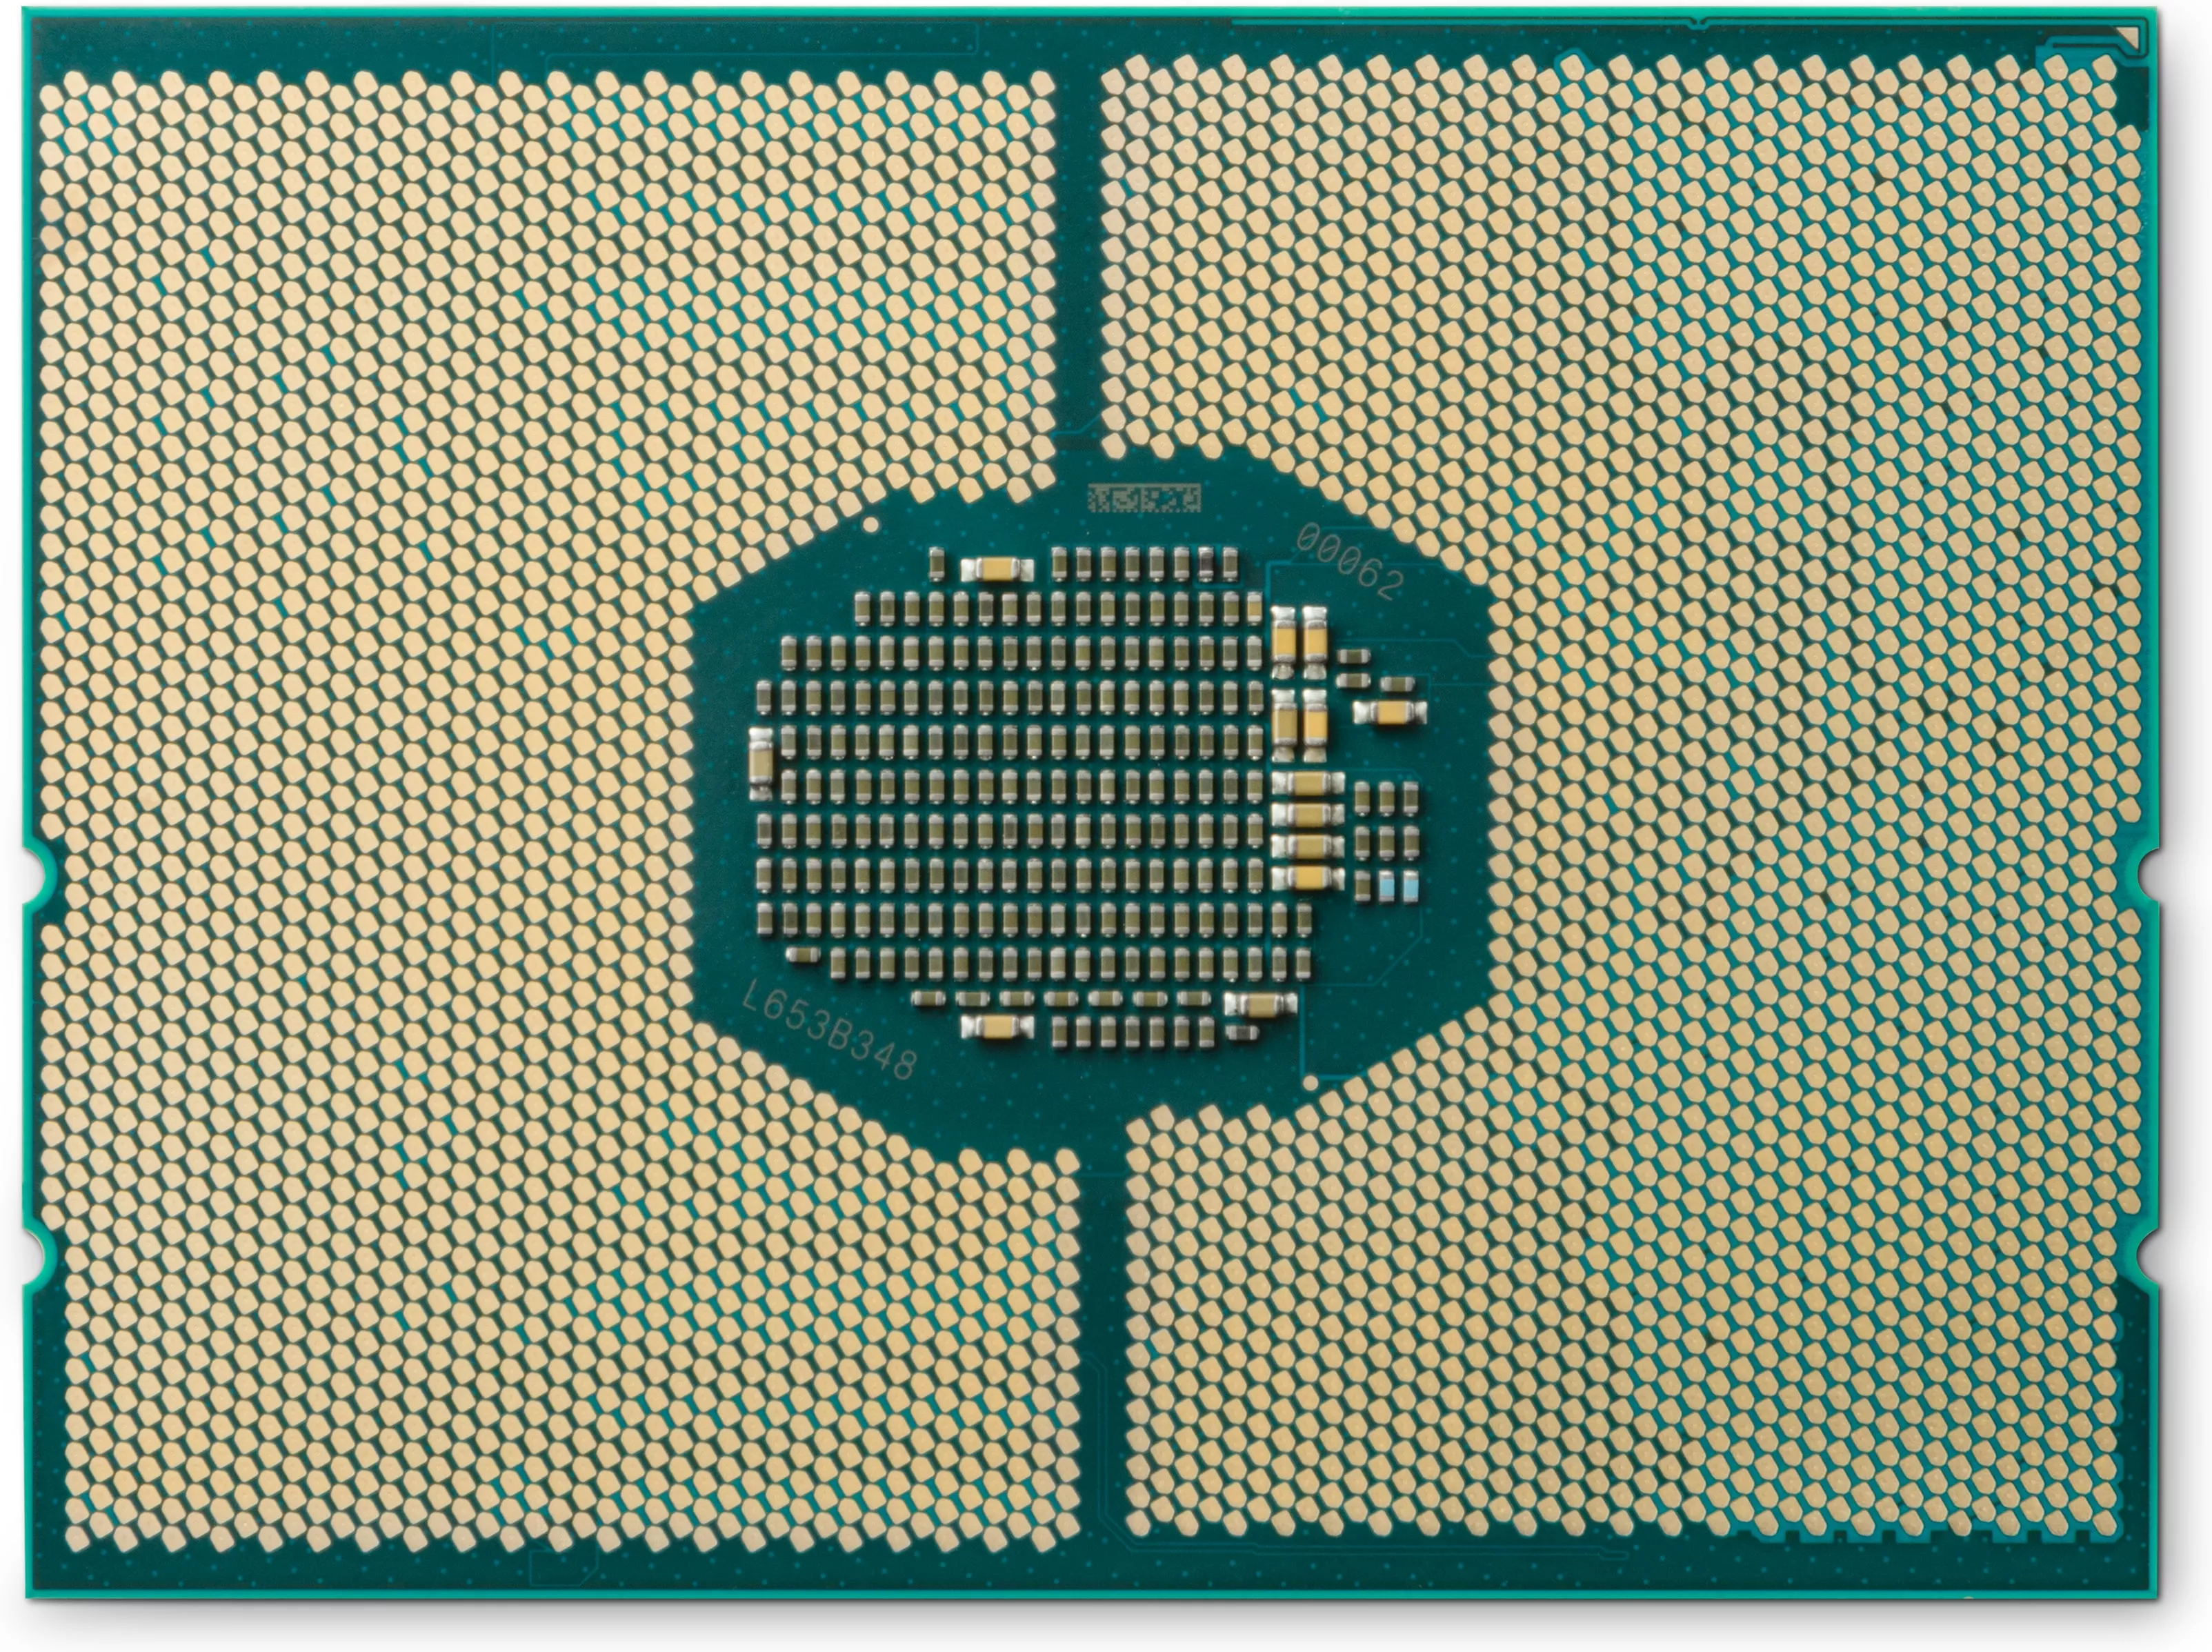 Achat Processeur HP Z6 G4 Xeon 6226R 2.9GHz 2933 16C 150W CPU2